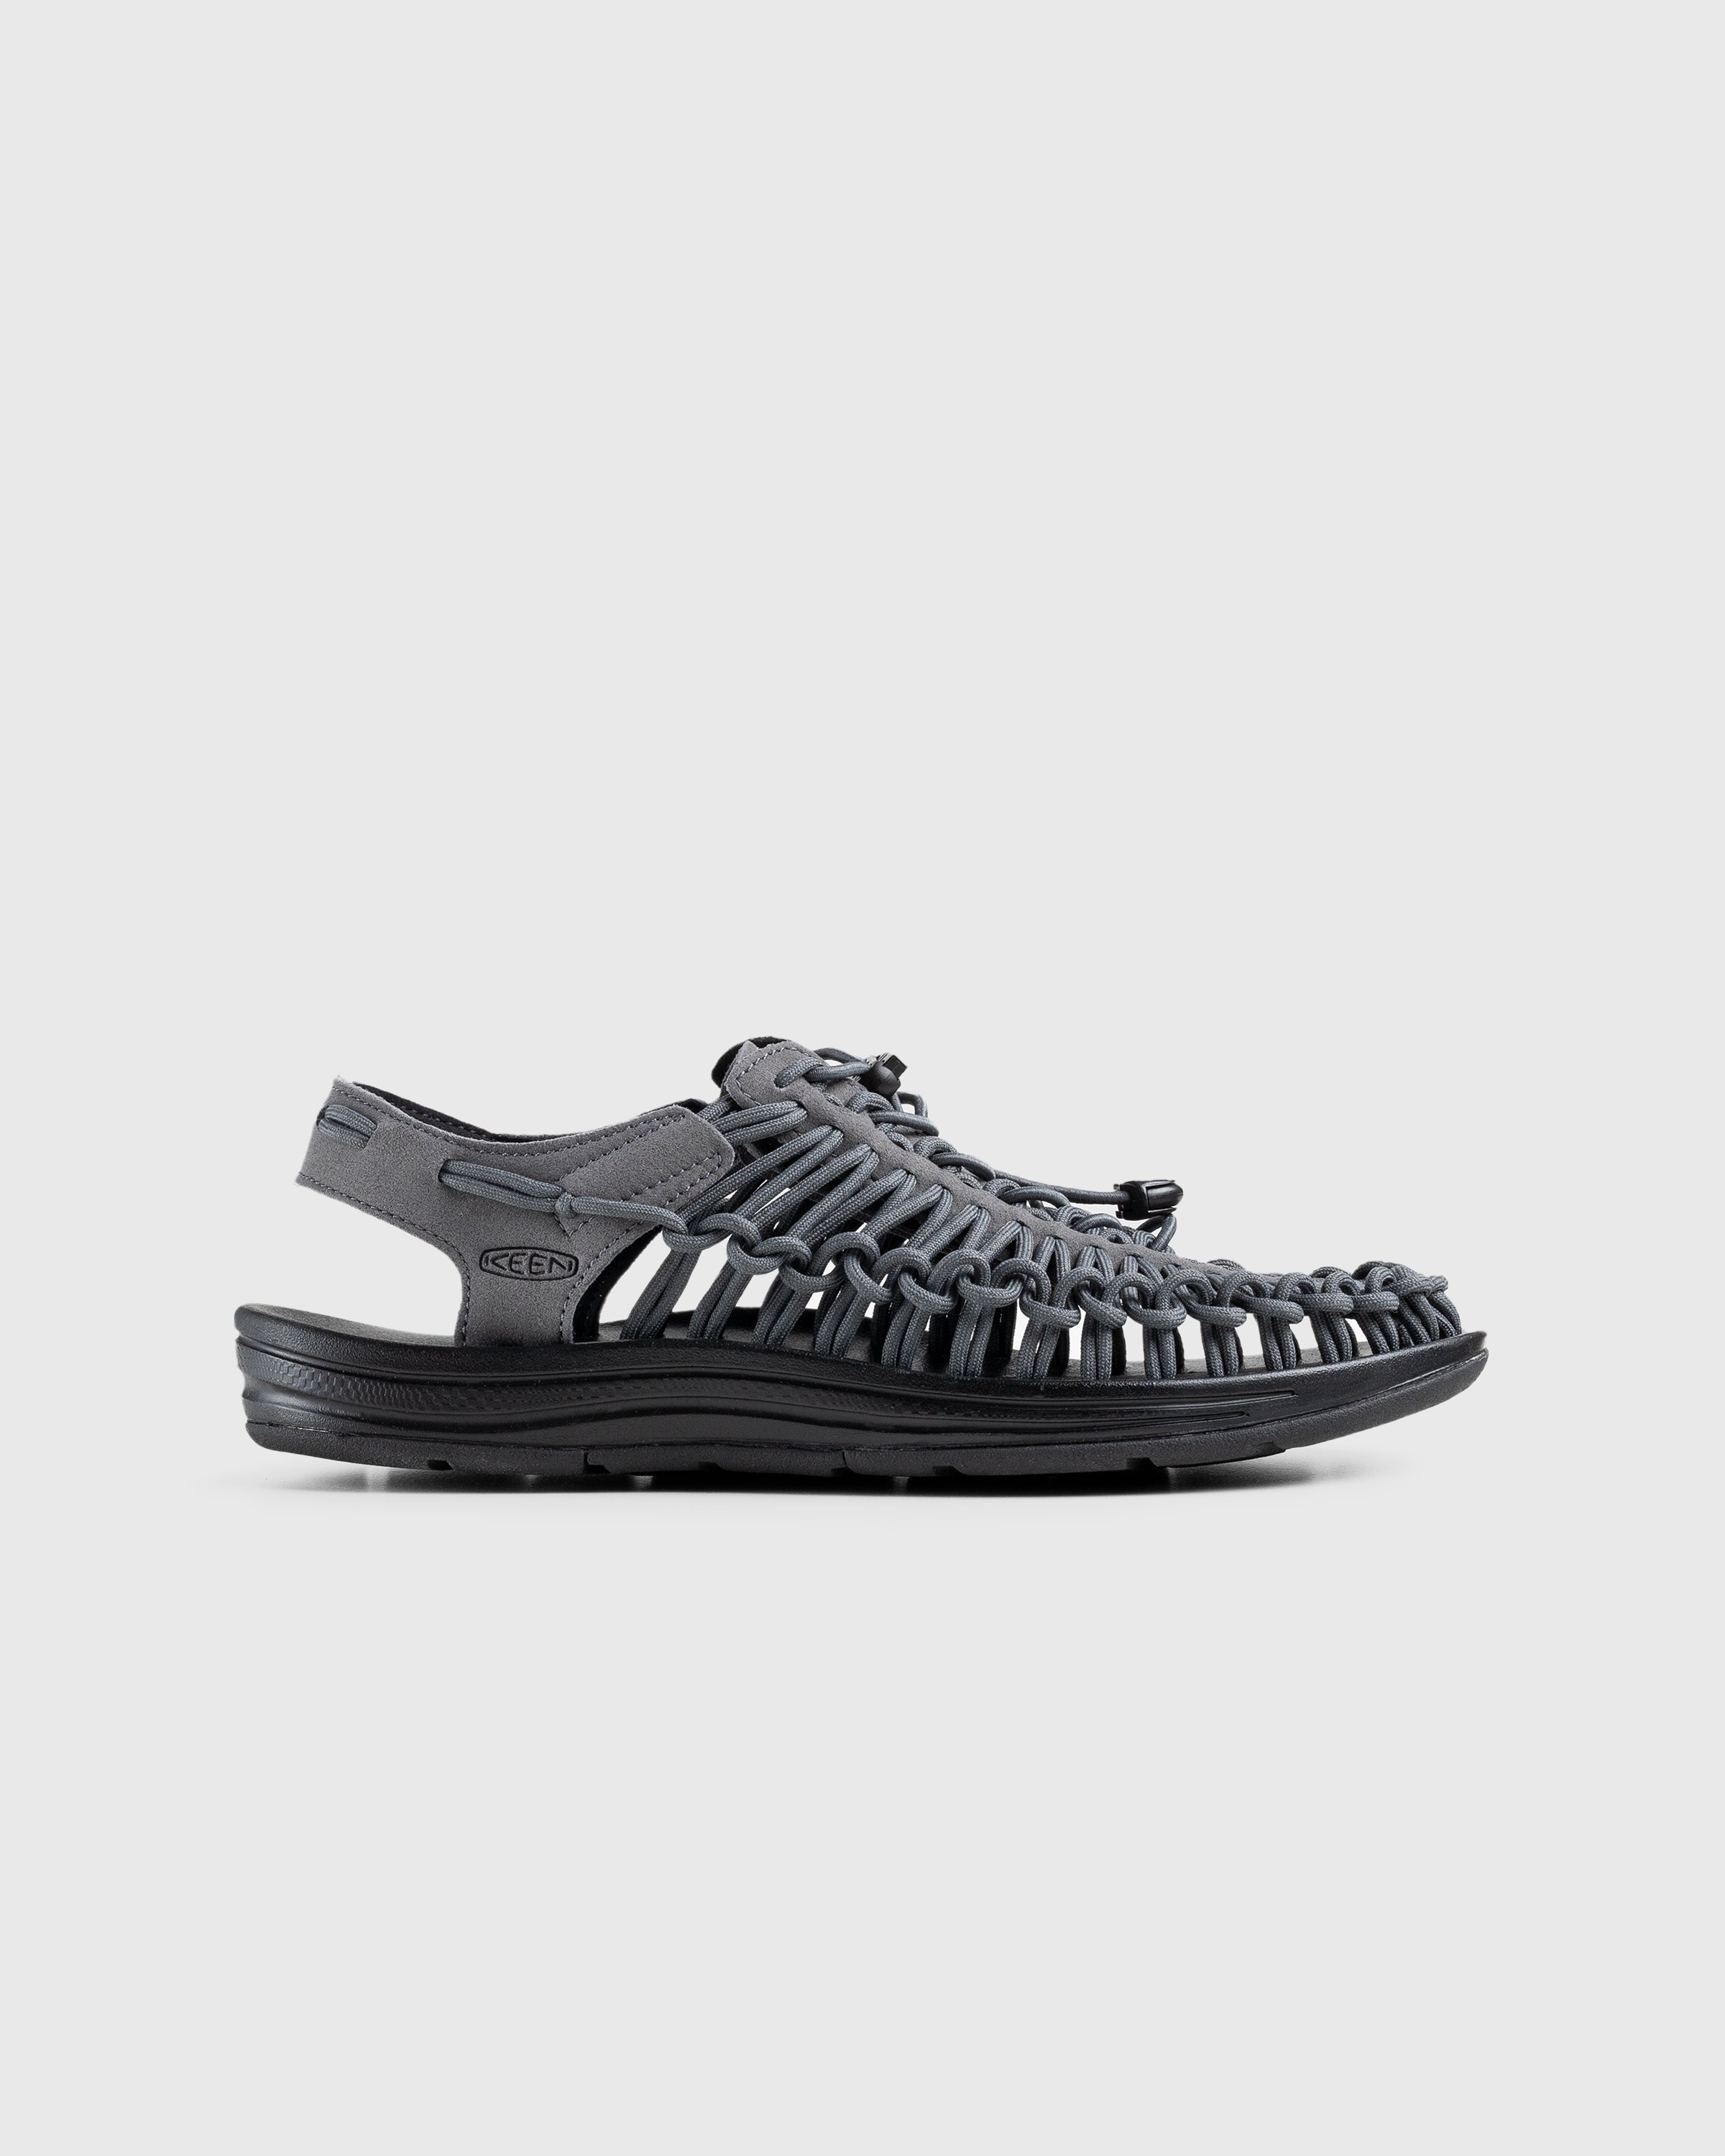 Keen – Uneek Magnet/Black - Sandals - Grey - Image 1